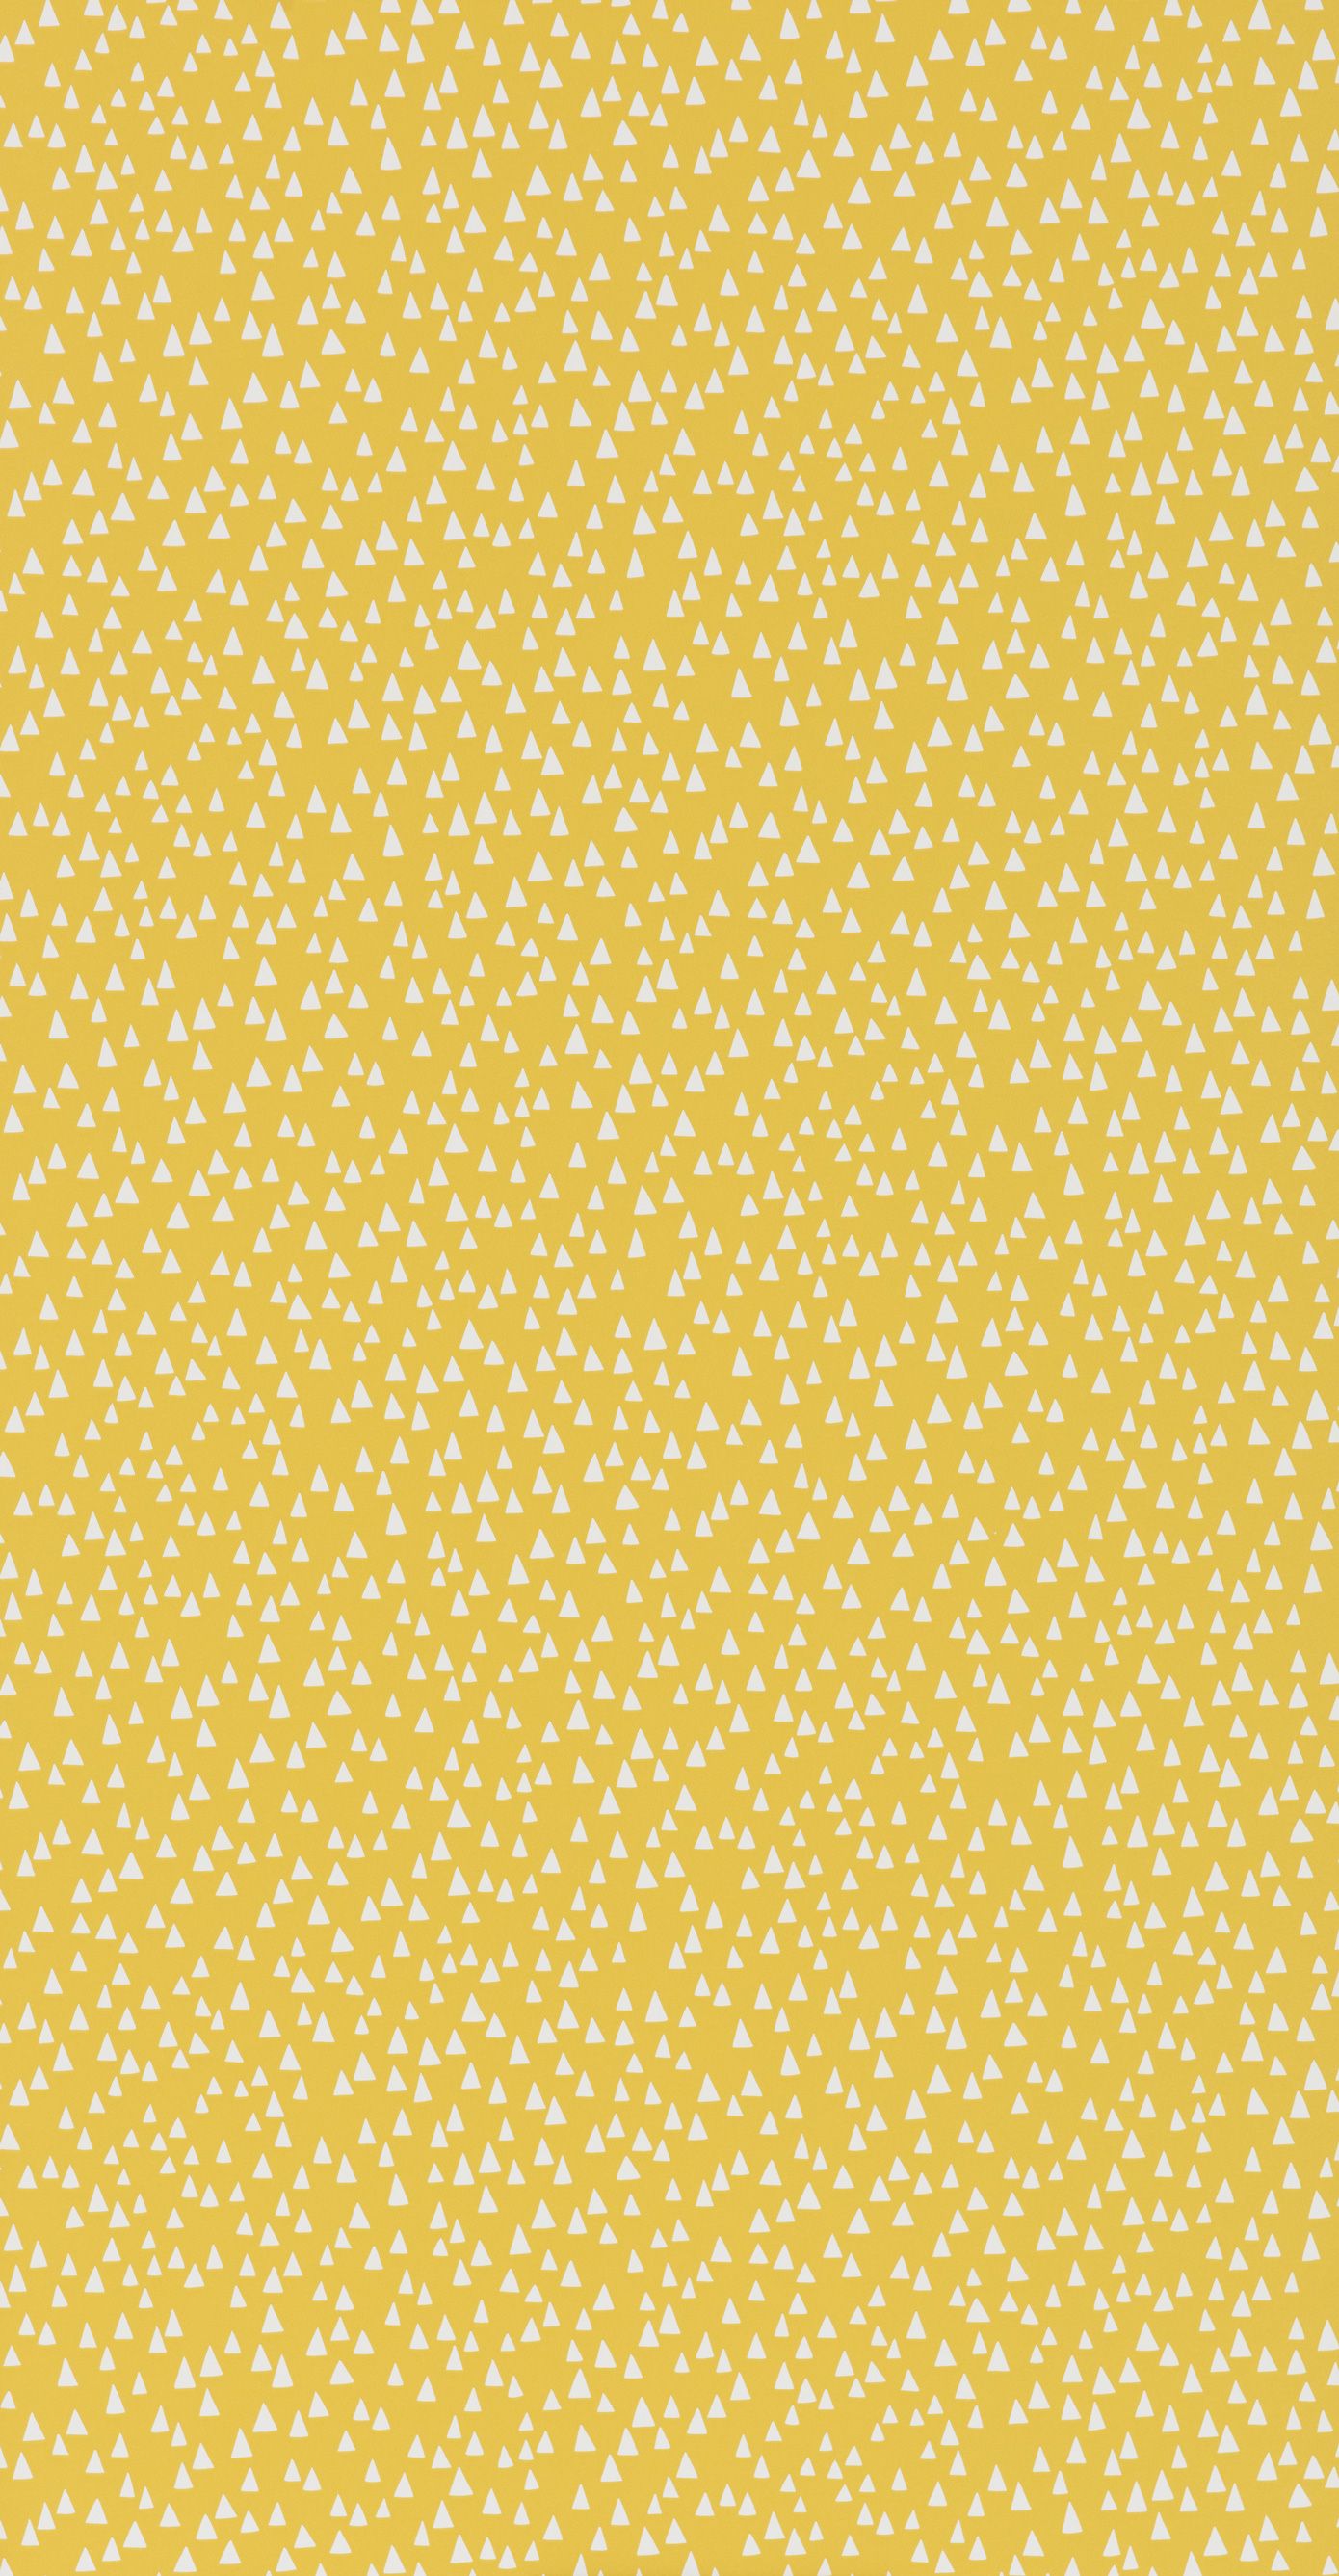 Fondos de pantalla amarillos | Papel pintado amarillo para paredes | Reino Unido | MissPrint Home